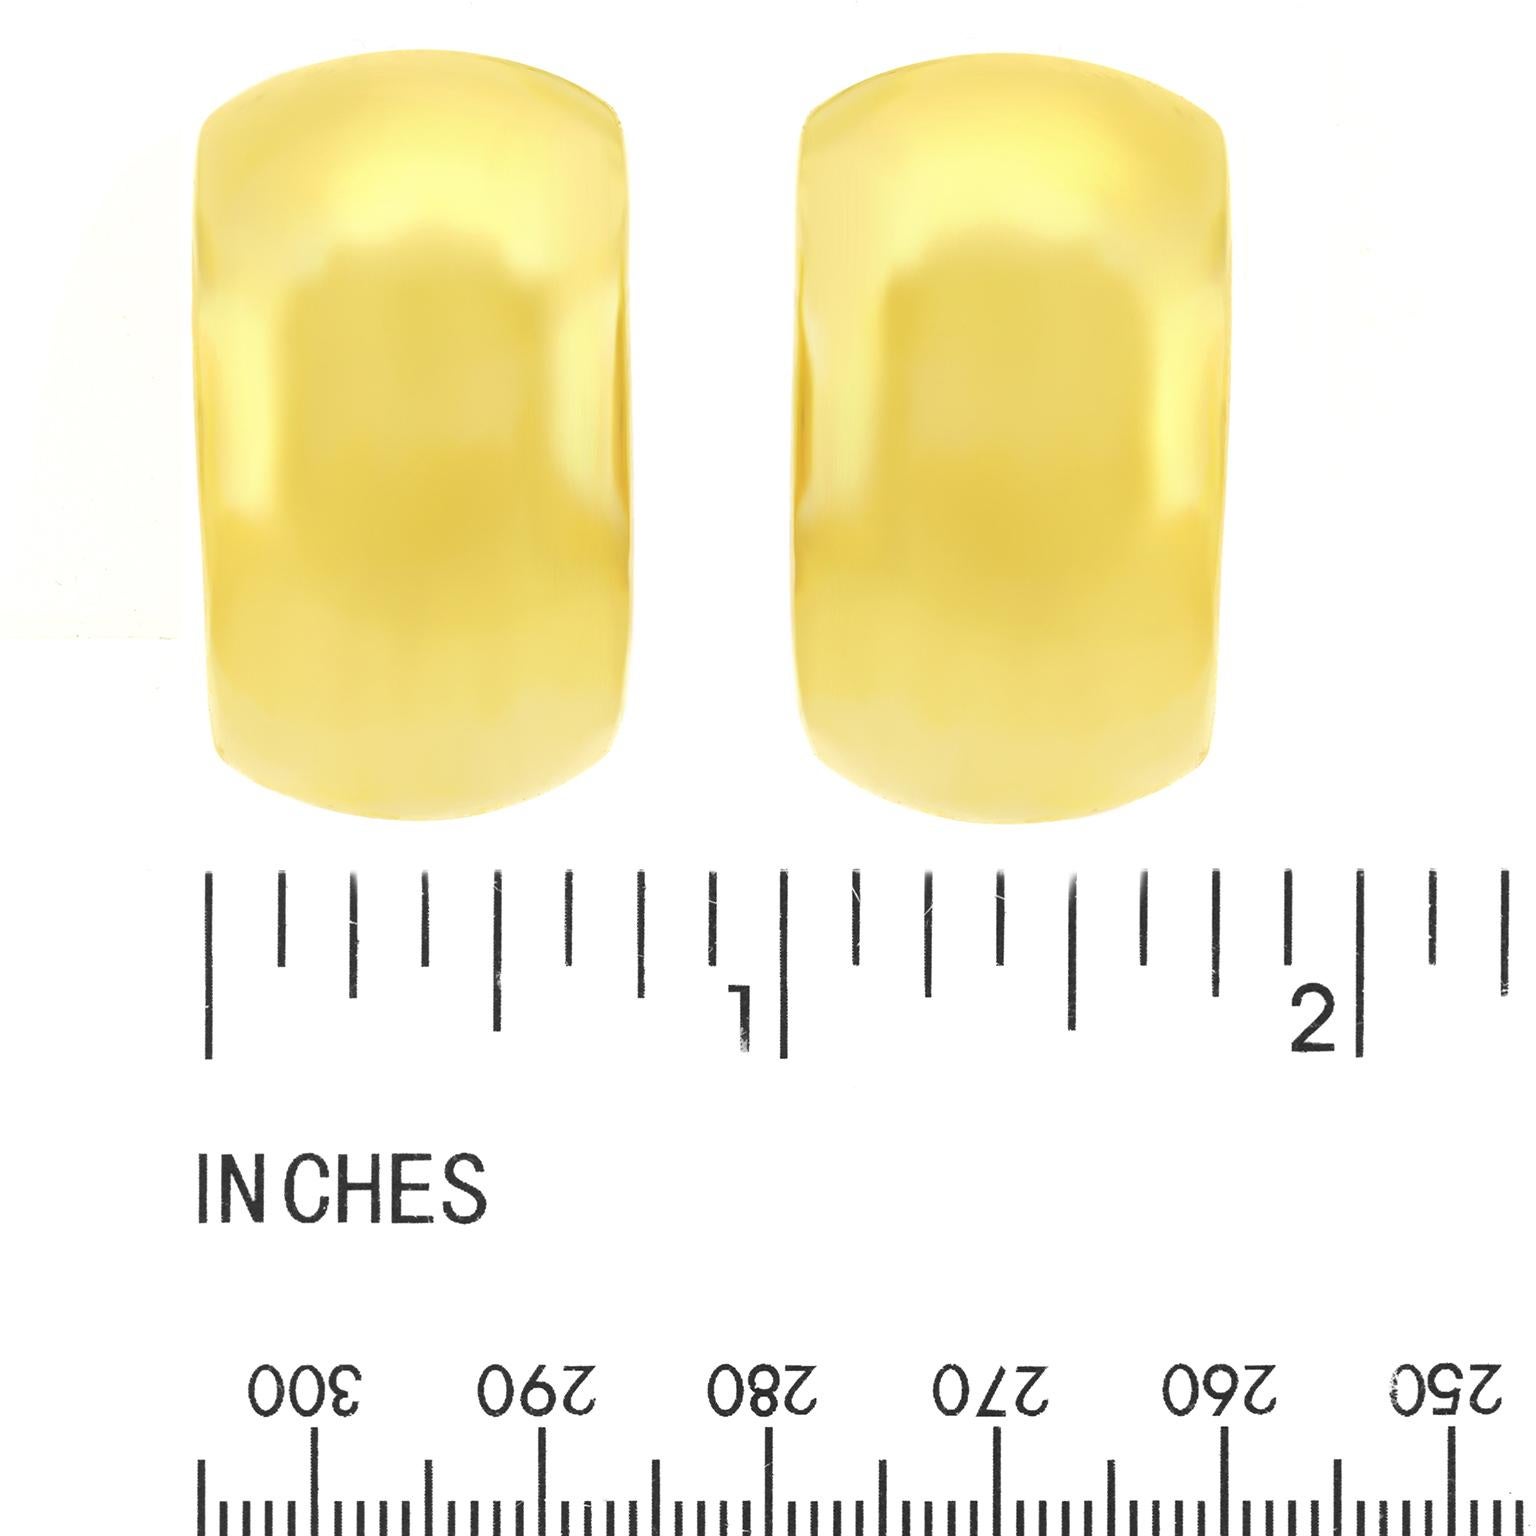 Bucherer Gold Earrings 2